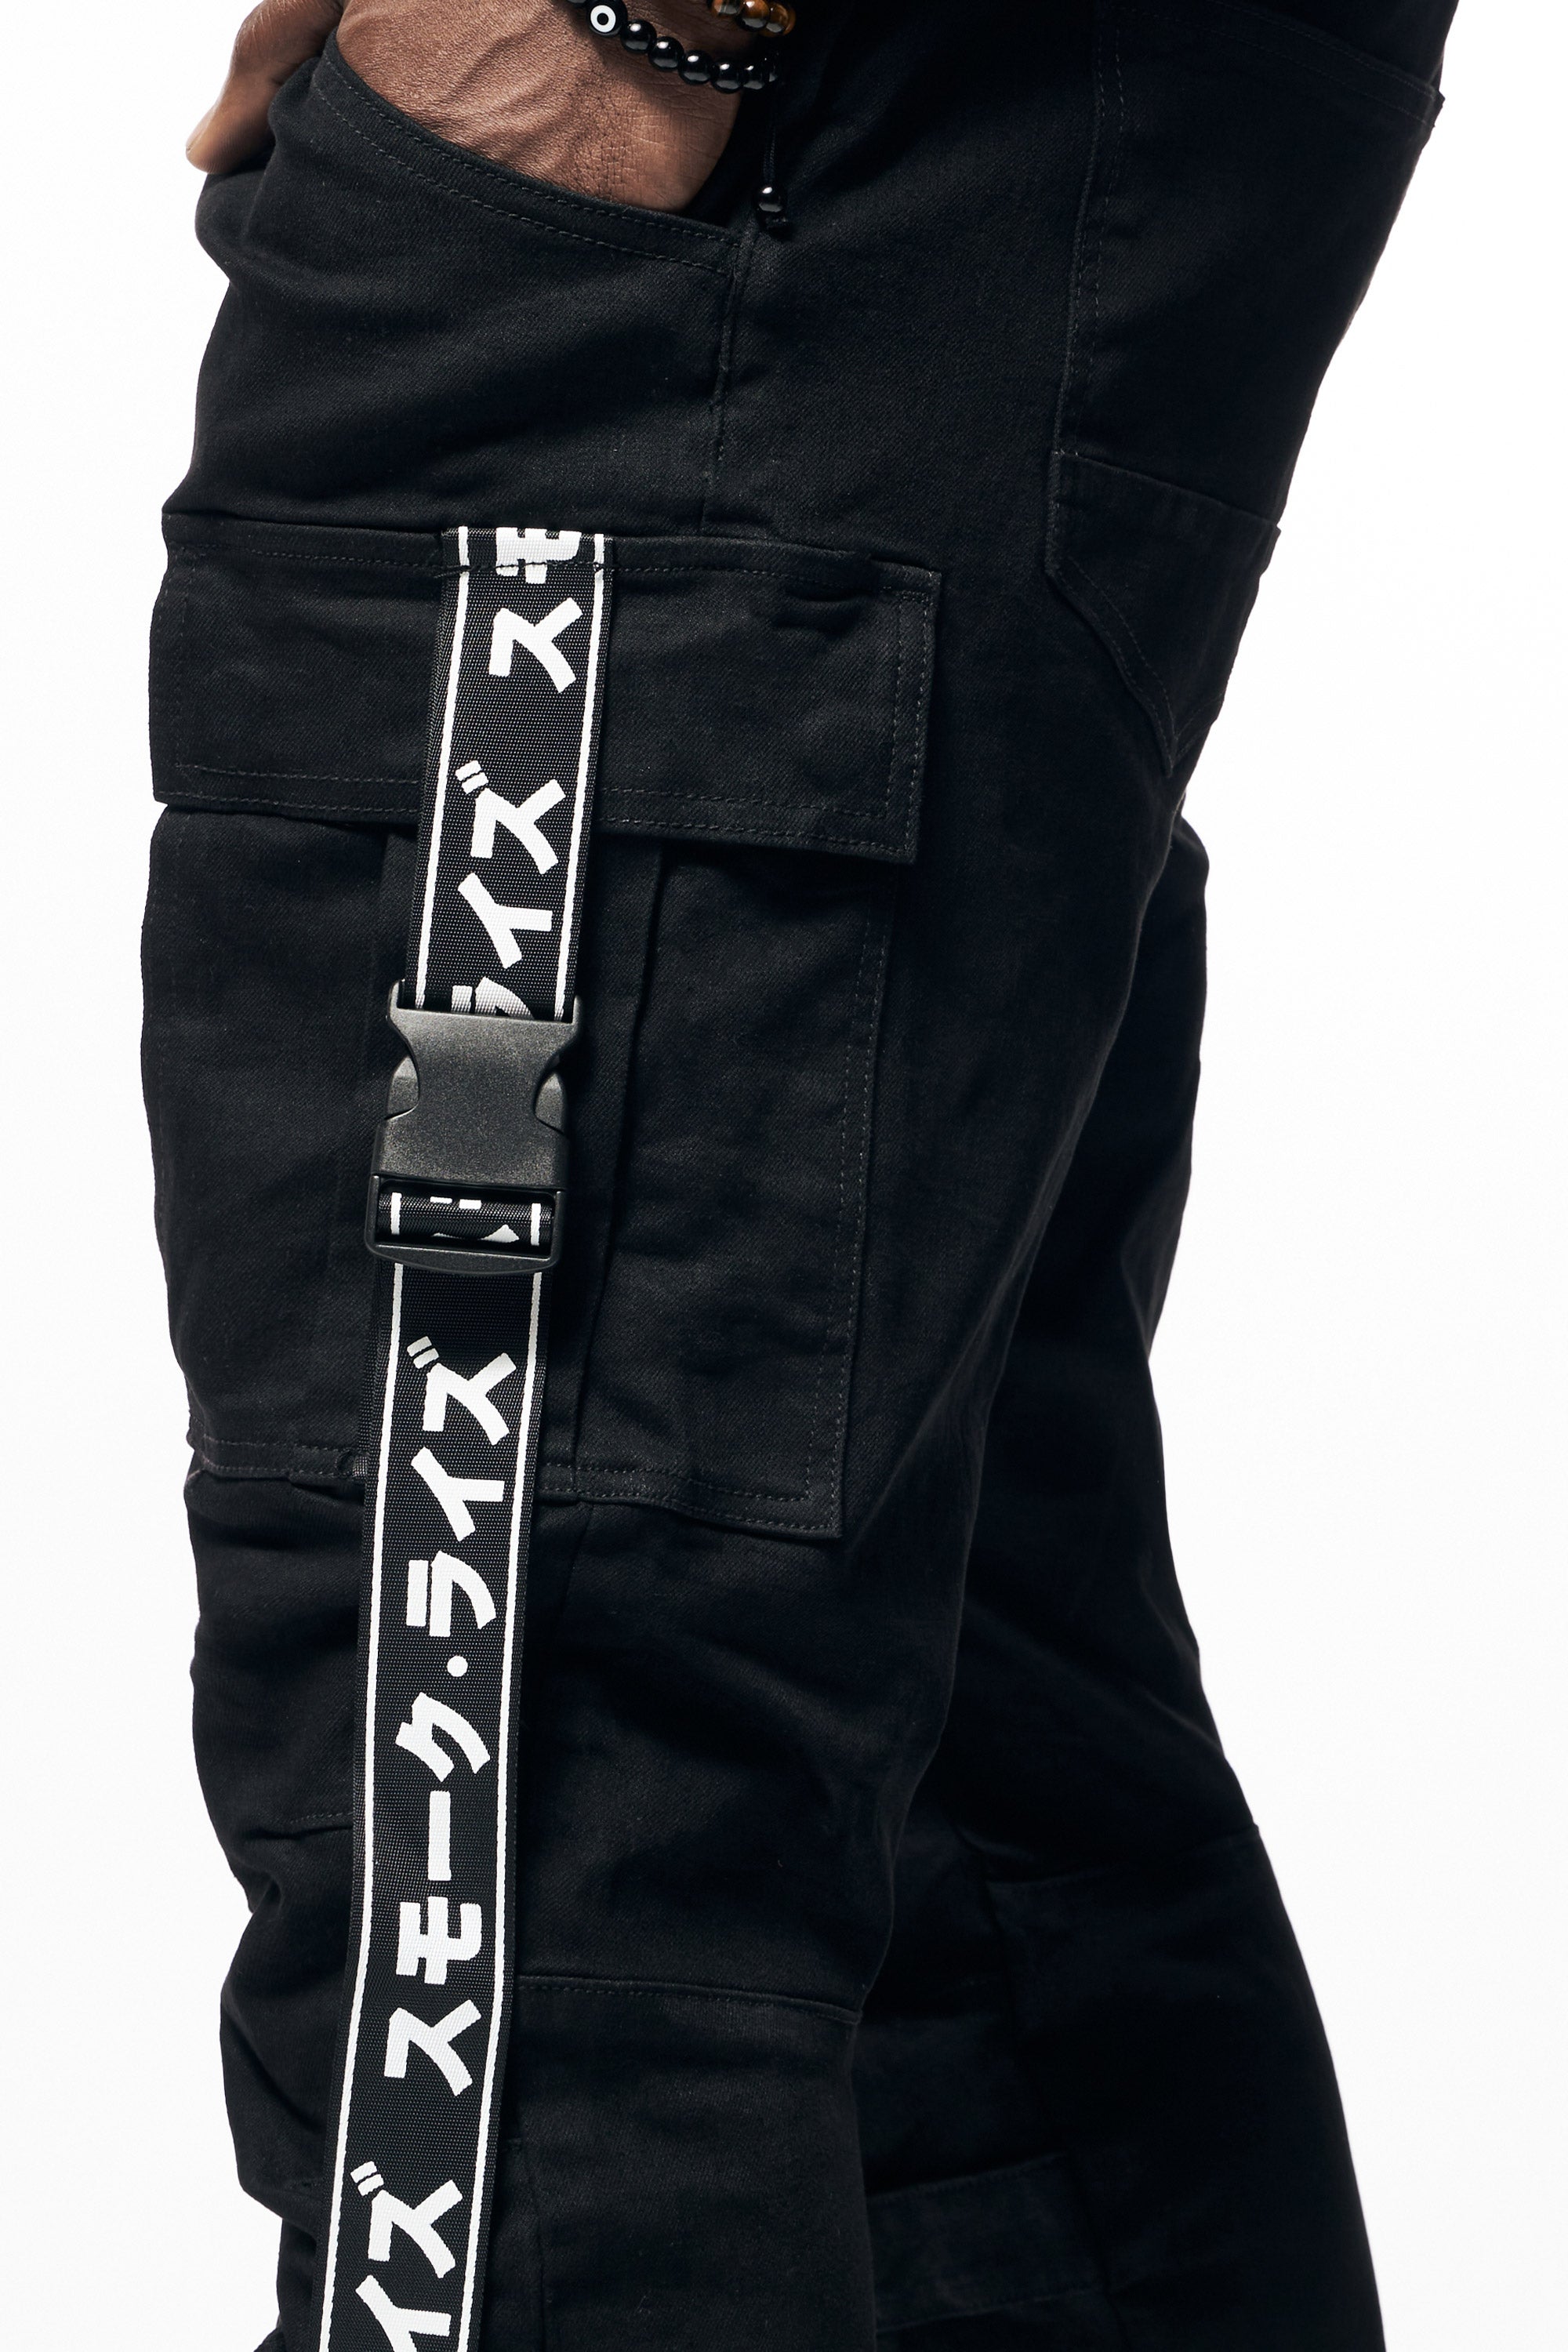 Mens Multi Cargo Fashion Twill Overalls - Black